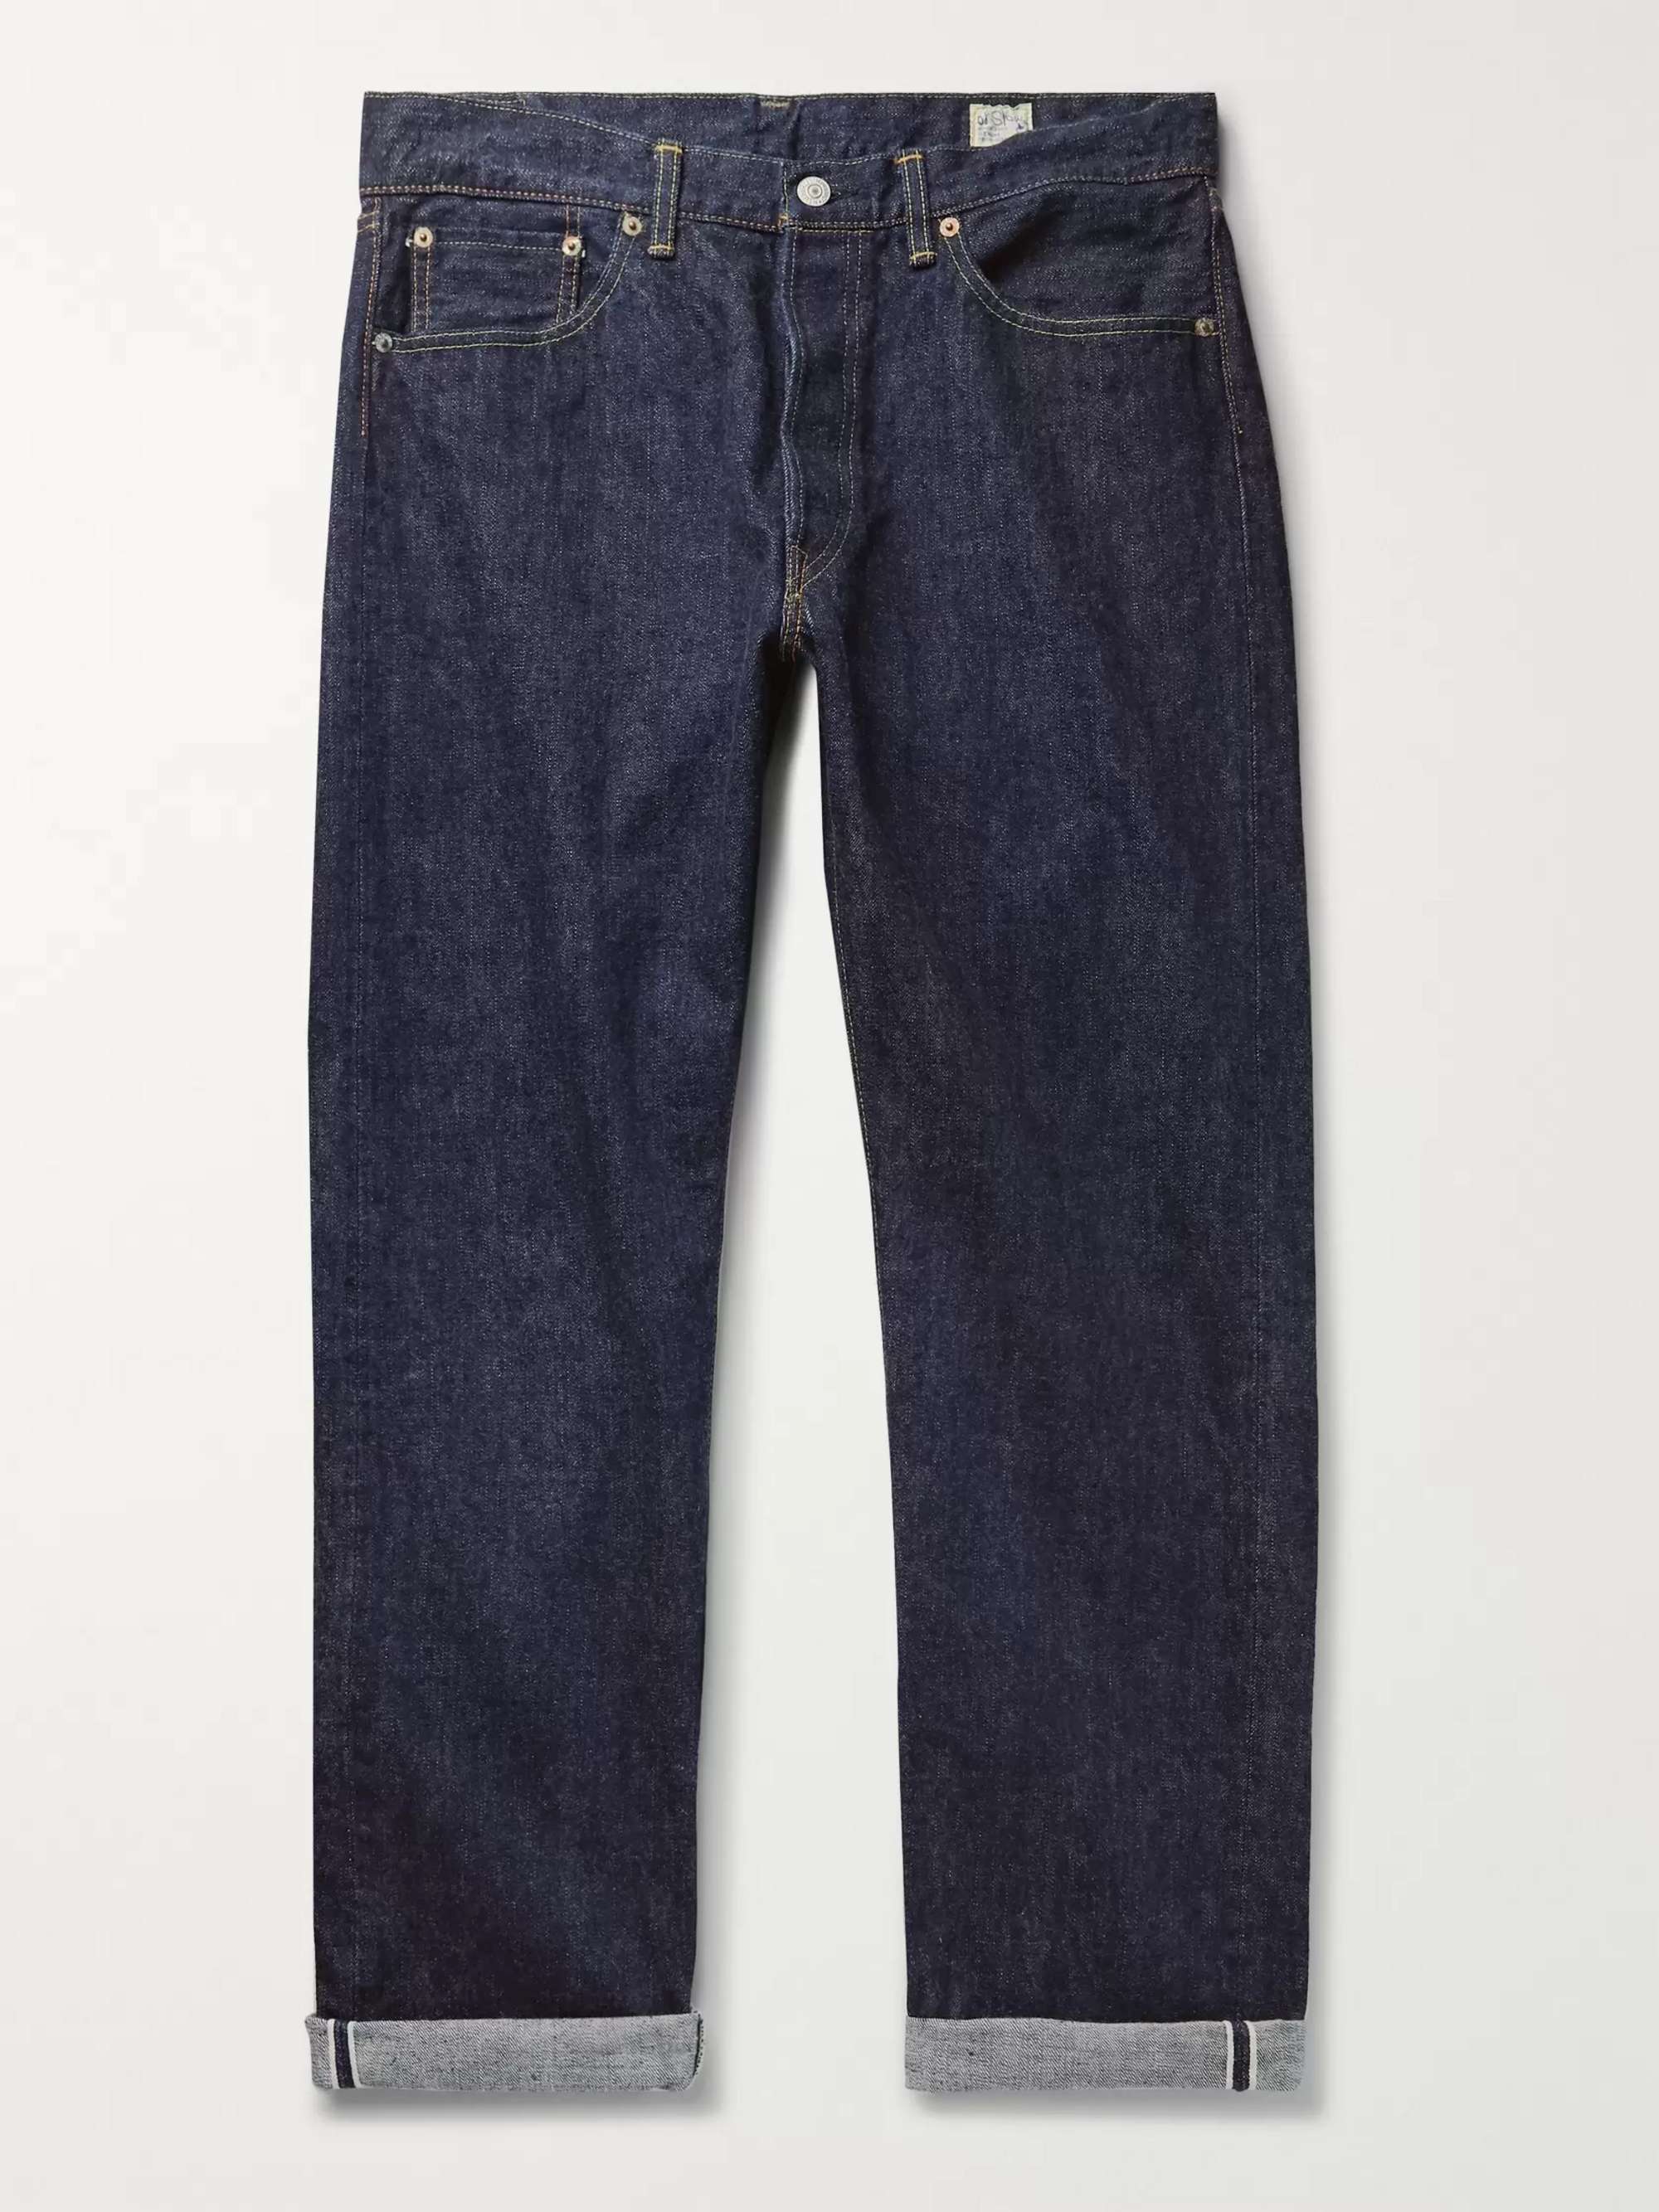 ORSLOW 105 Selvedge Denim Jeans for Men | MR PORTER